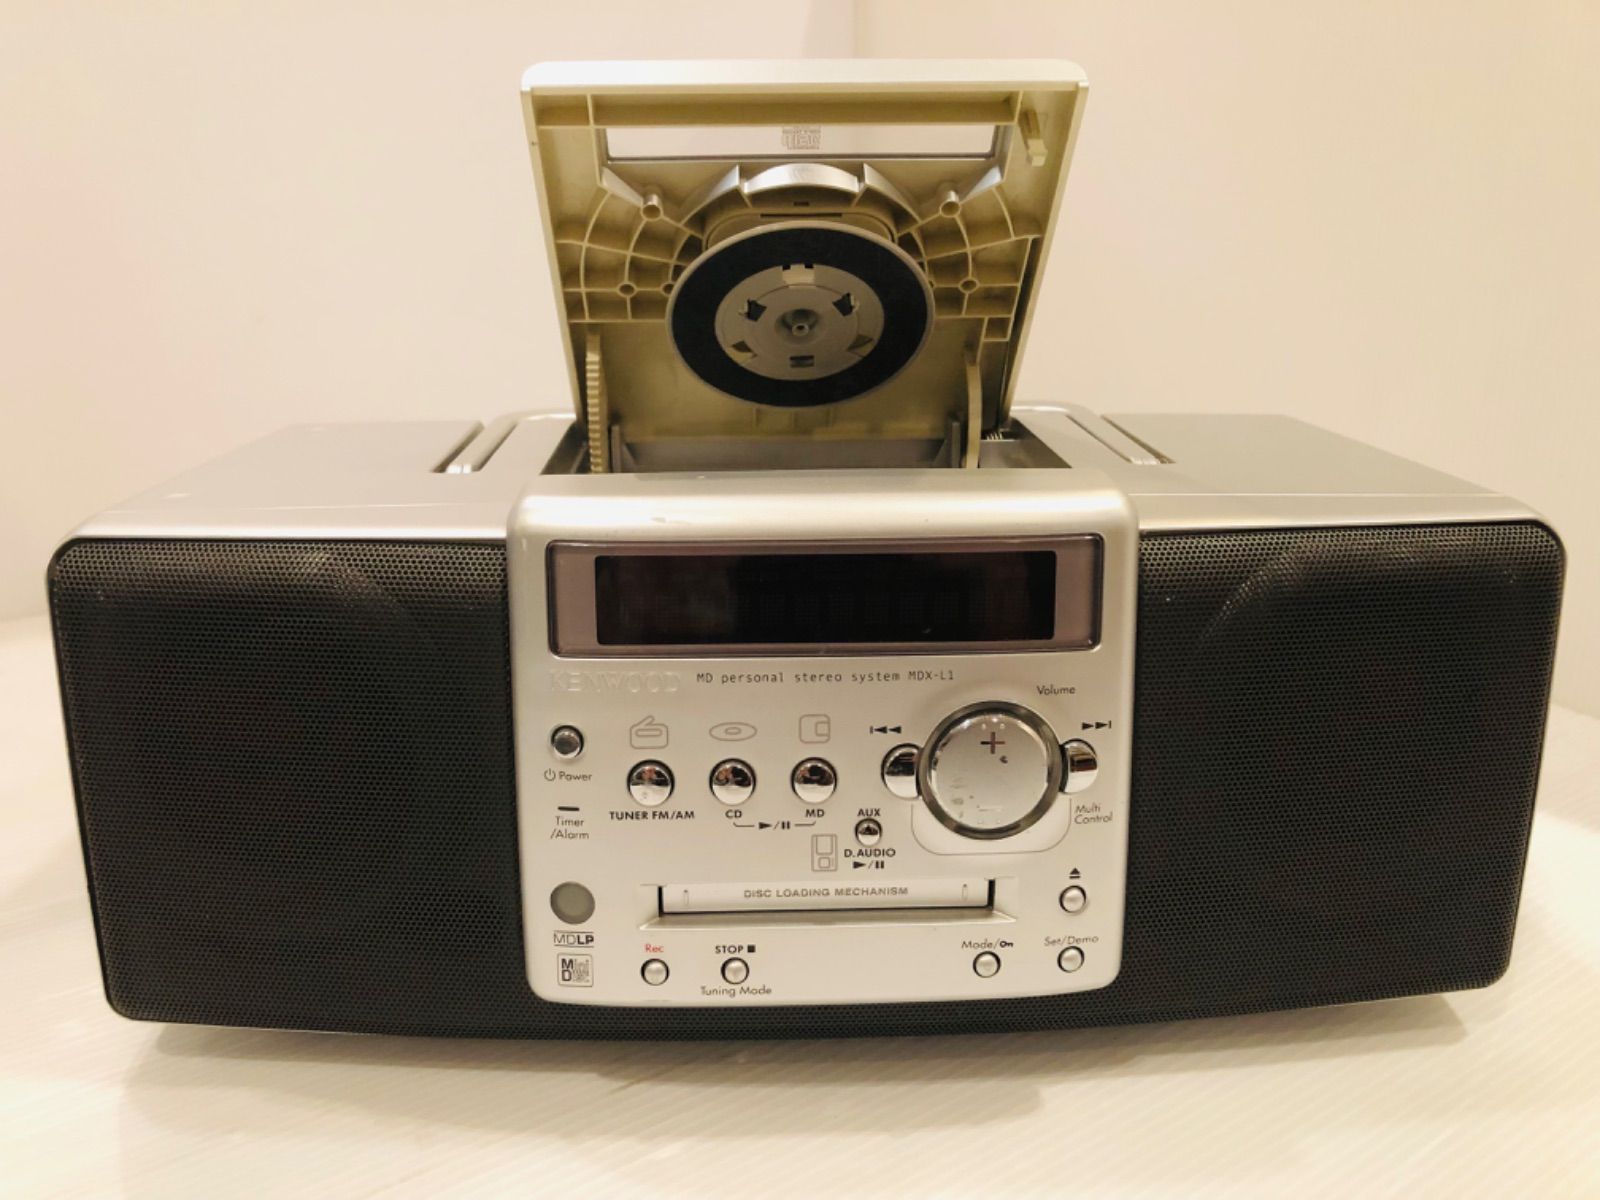 KENWOOD MDX-L1 CD MD ラジオパーソナルステレオシステム - ポータブル